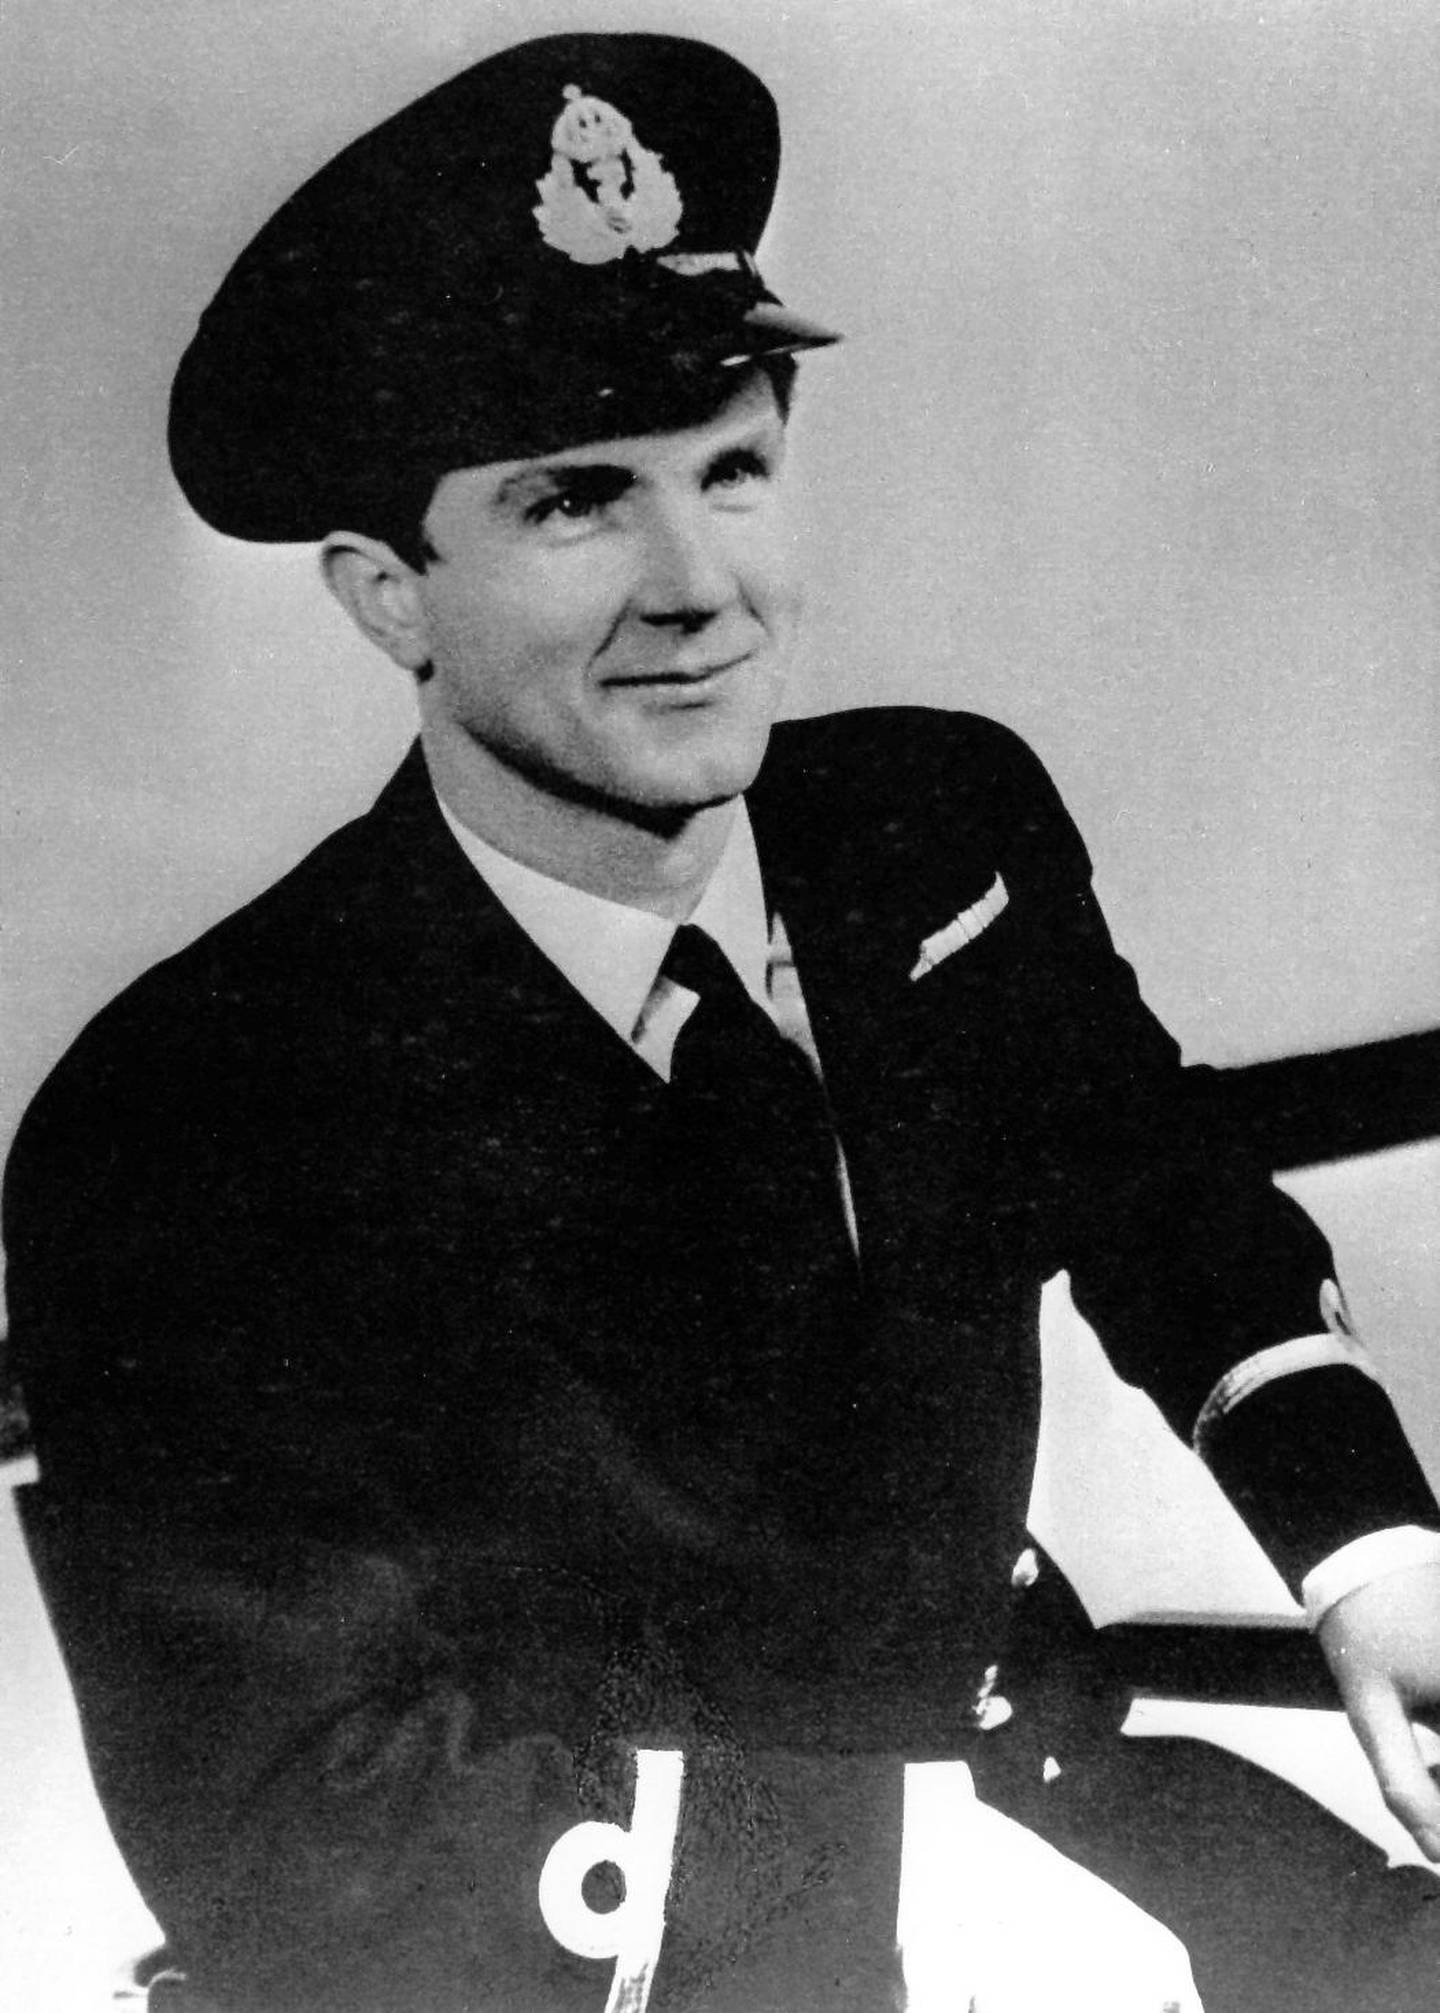 Inge Steensland var bare 21 år gammel da han ledet «Operasjon Polar Bear» og slepebåtaksjonen. Etter krigen ble han tildelt Nroges høyeste utmerkelse, Krigskorset med sverd, og ble senere en svært suksessfull skipsreder.